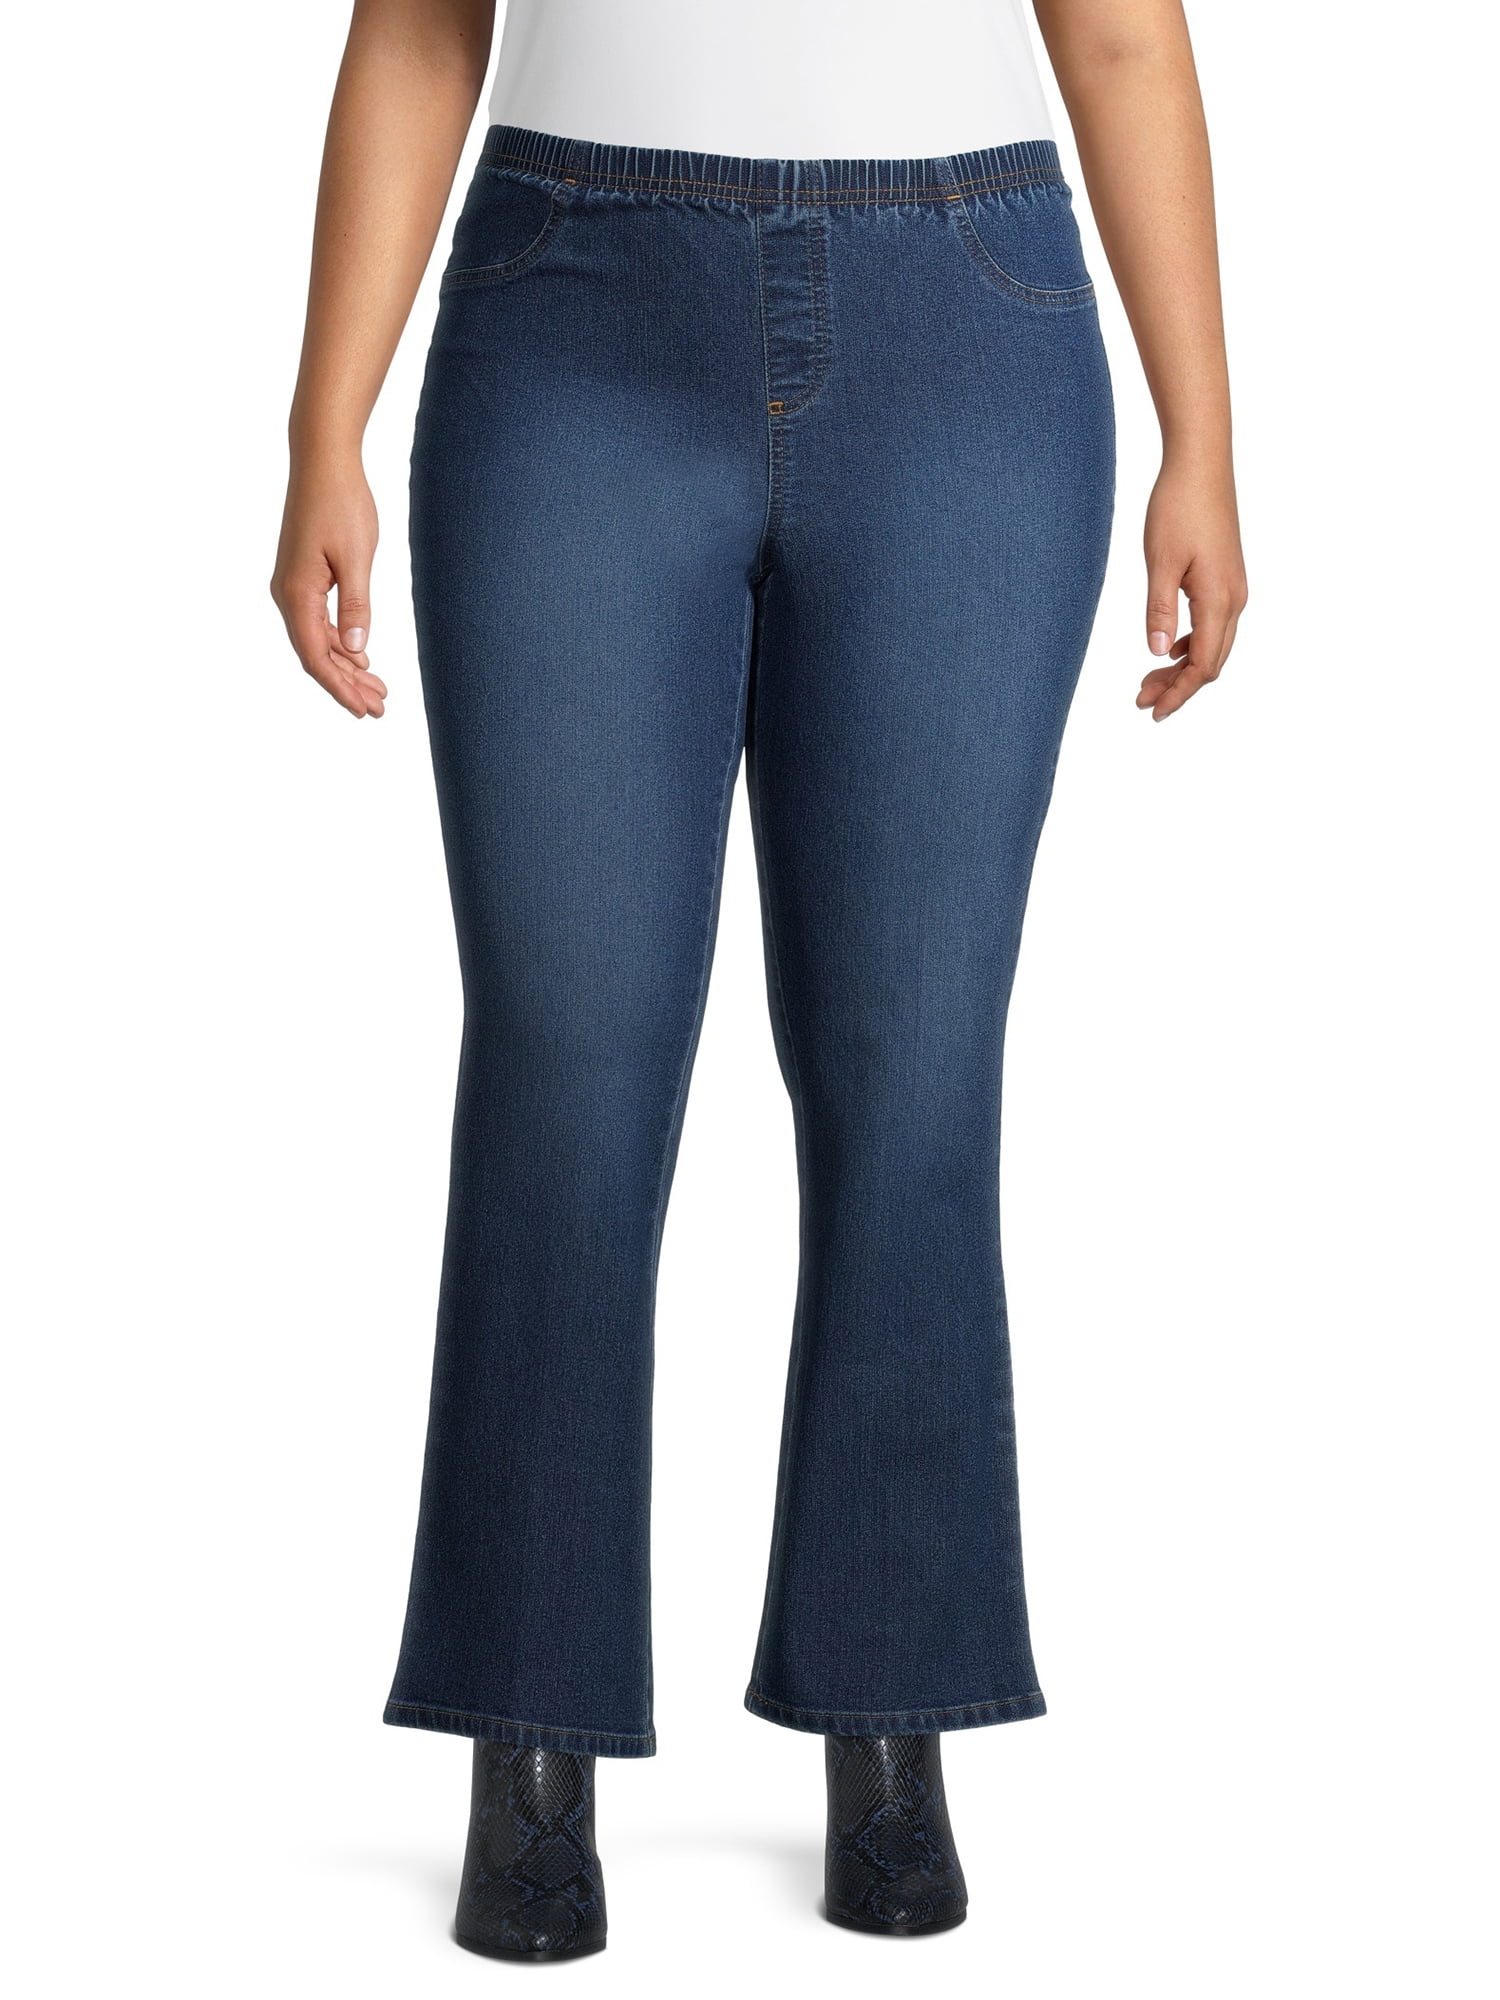 jms women's jeans